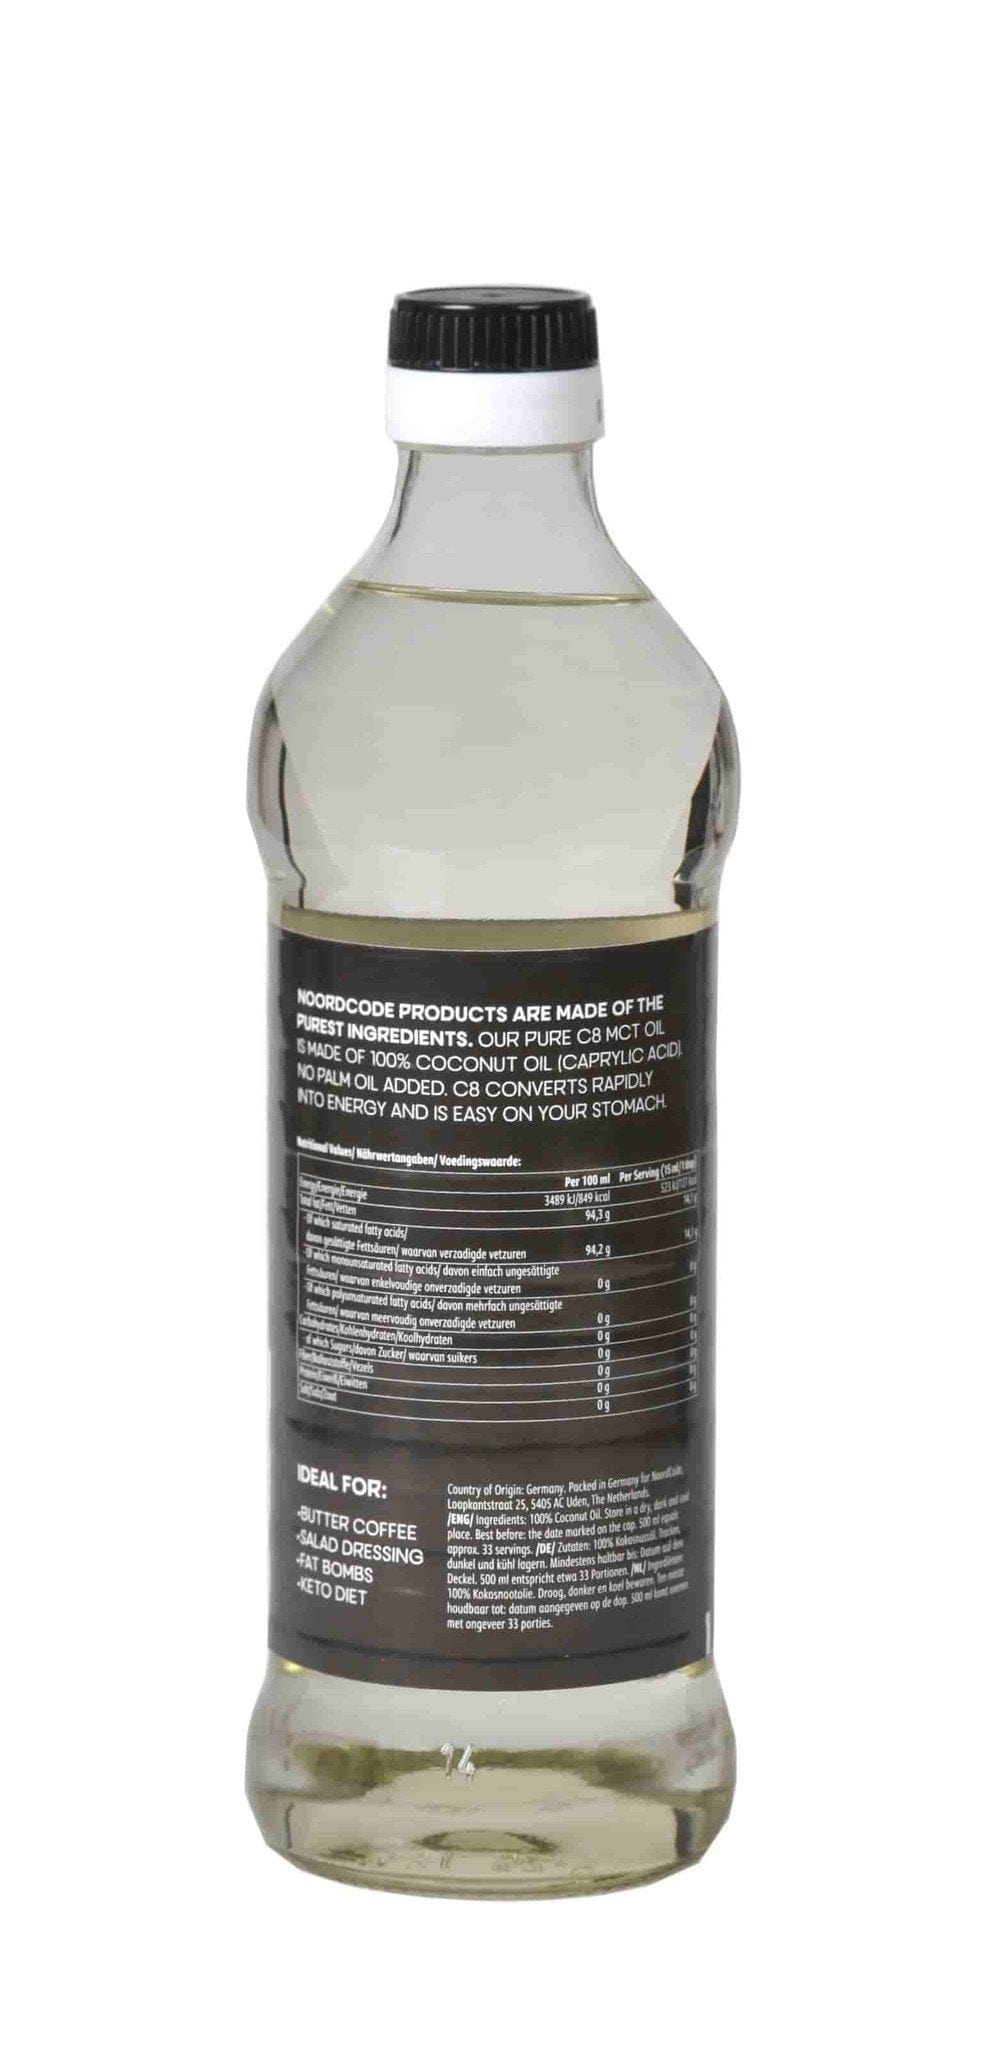 Koop NoordCode Pure C8 MCT Oil bij LiveHelfi